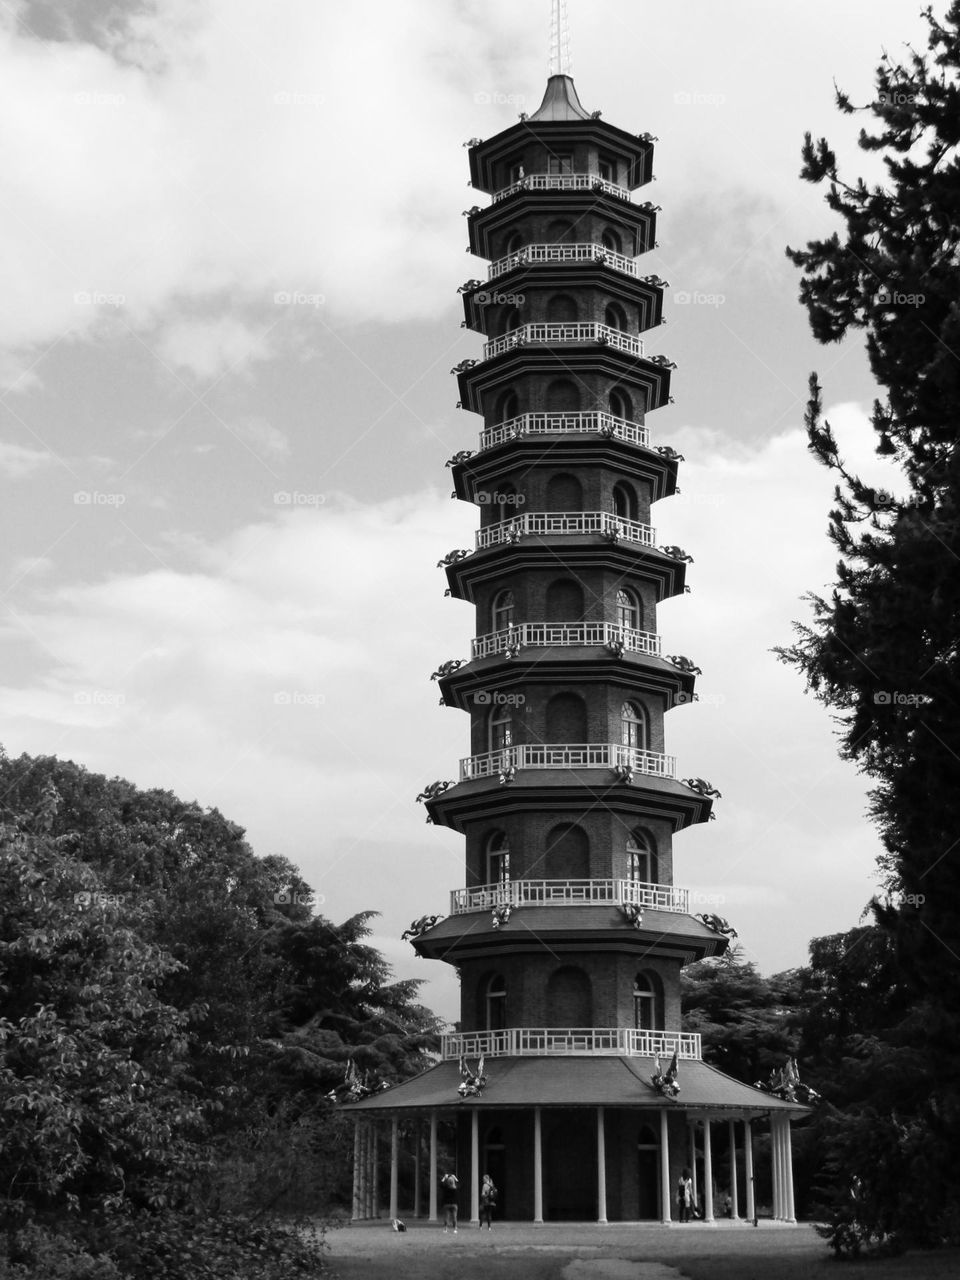 Great pagoda at kew gardens